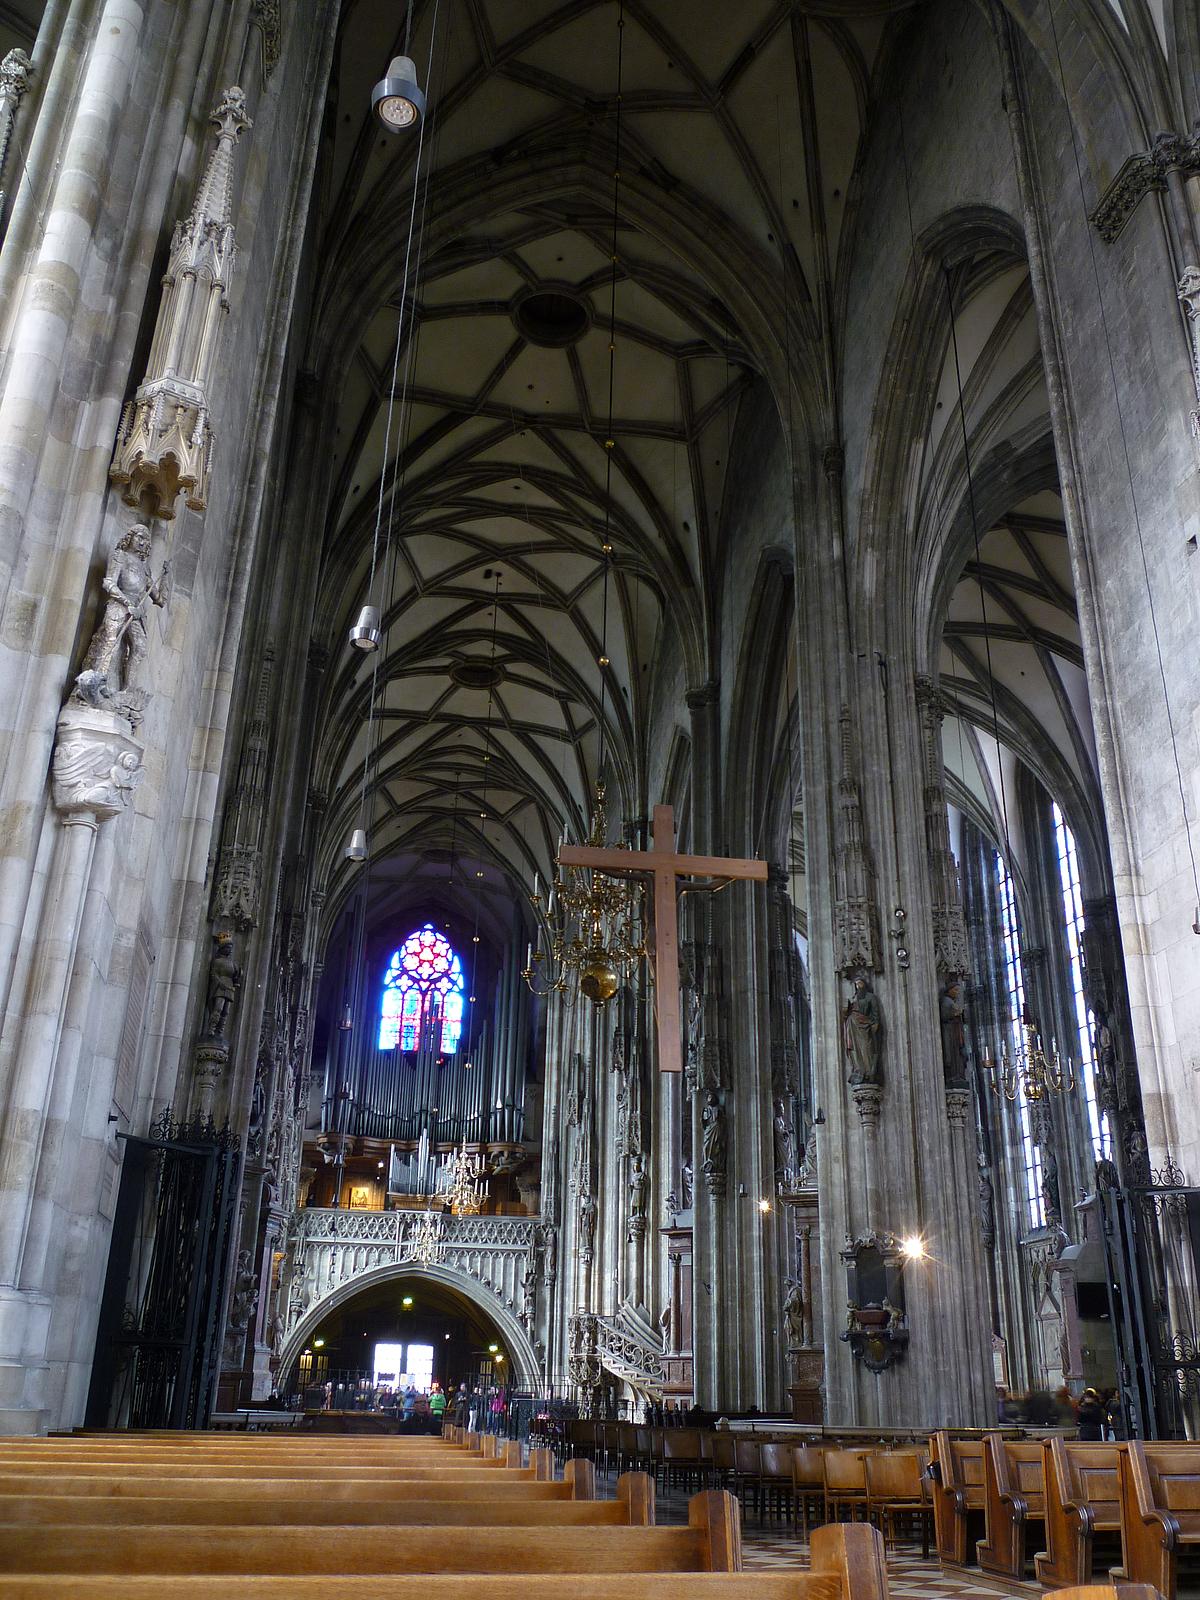 Orgel im Stephansdom - darüber kann man ein sehr kunstvolles Gewölber erkennen.